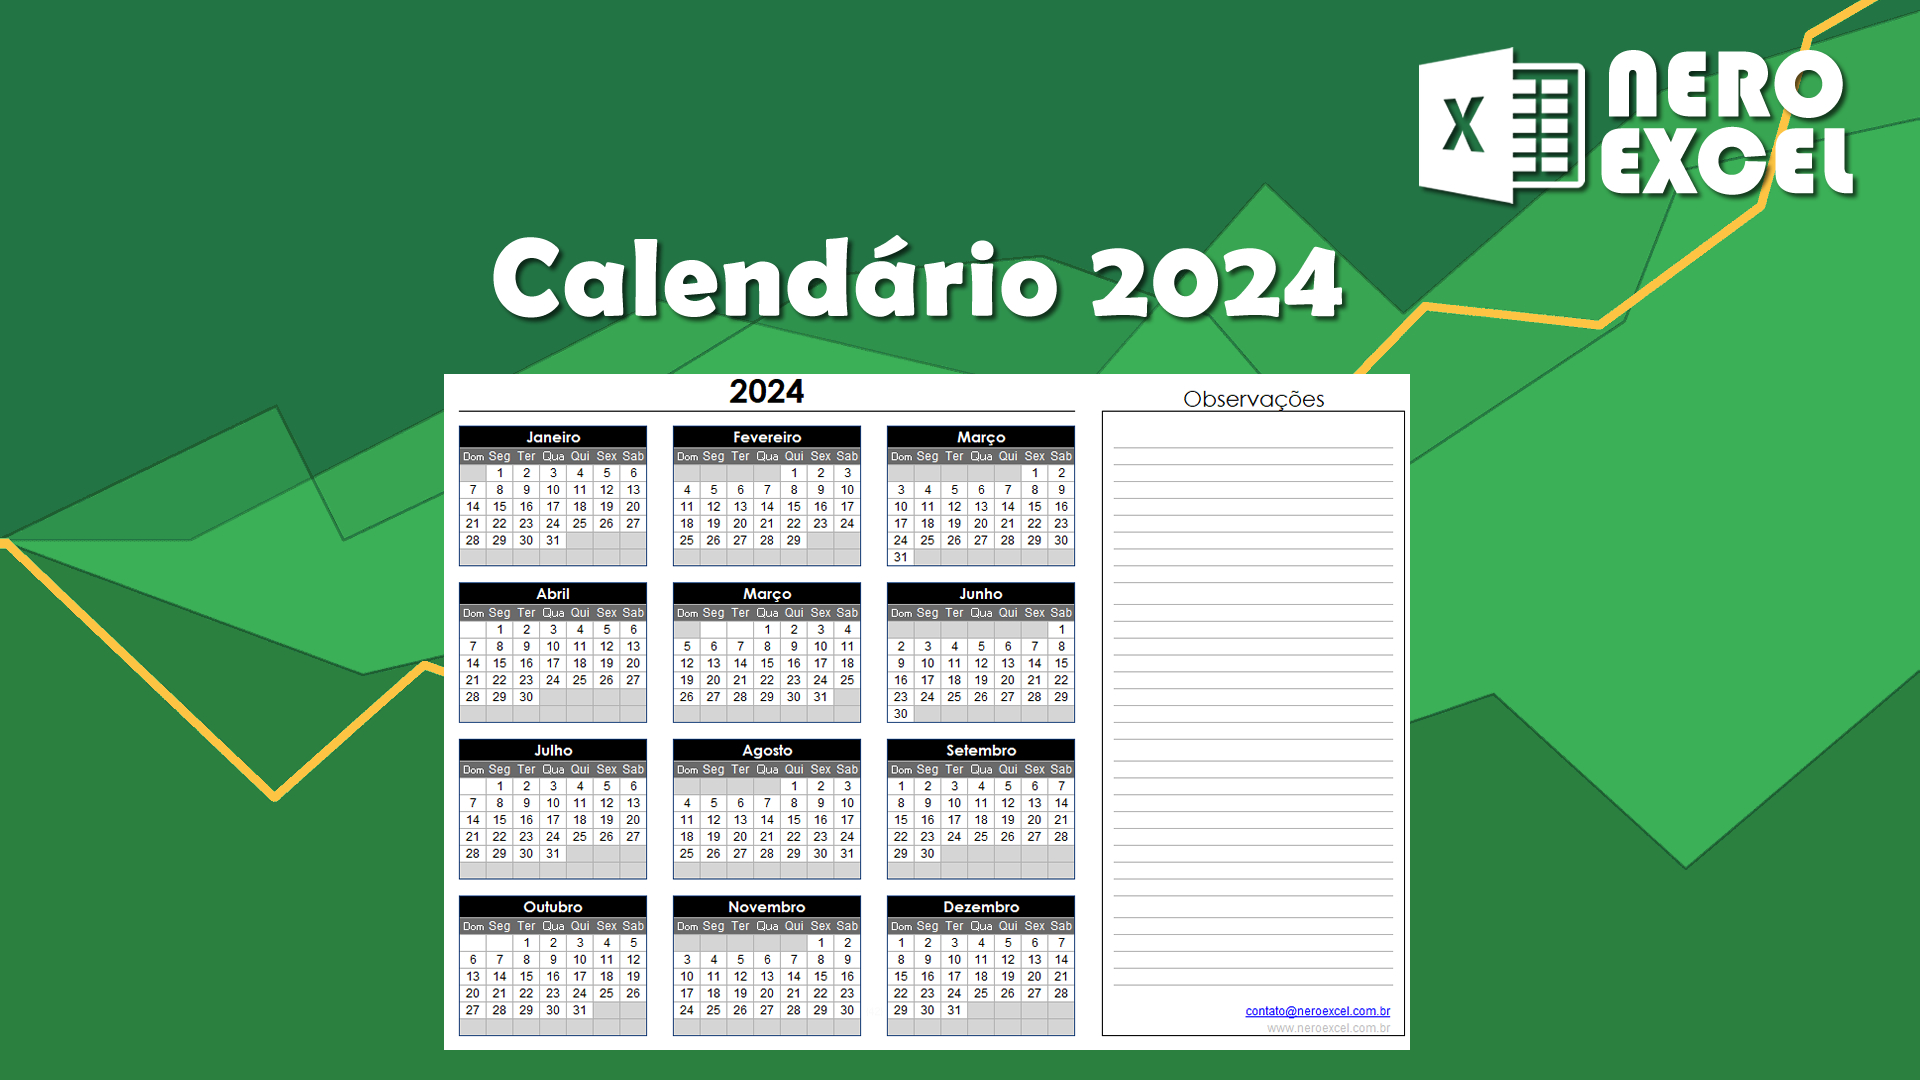 Calendário Excel 2024 Completo Para download, editar e imprimir.